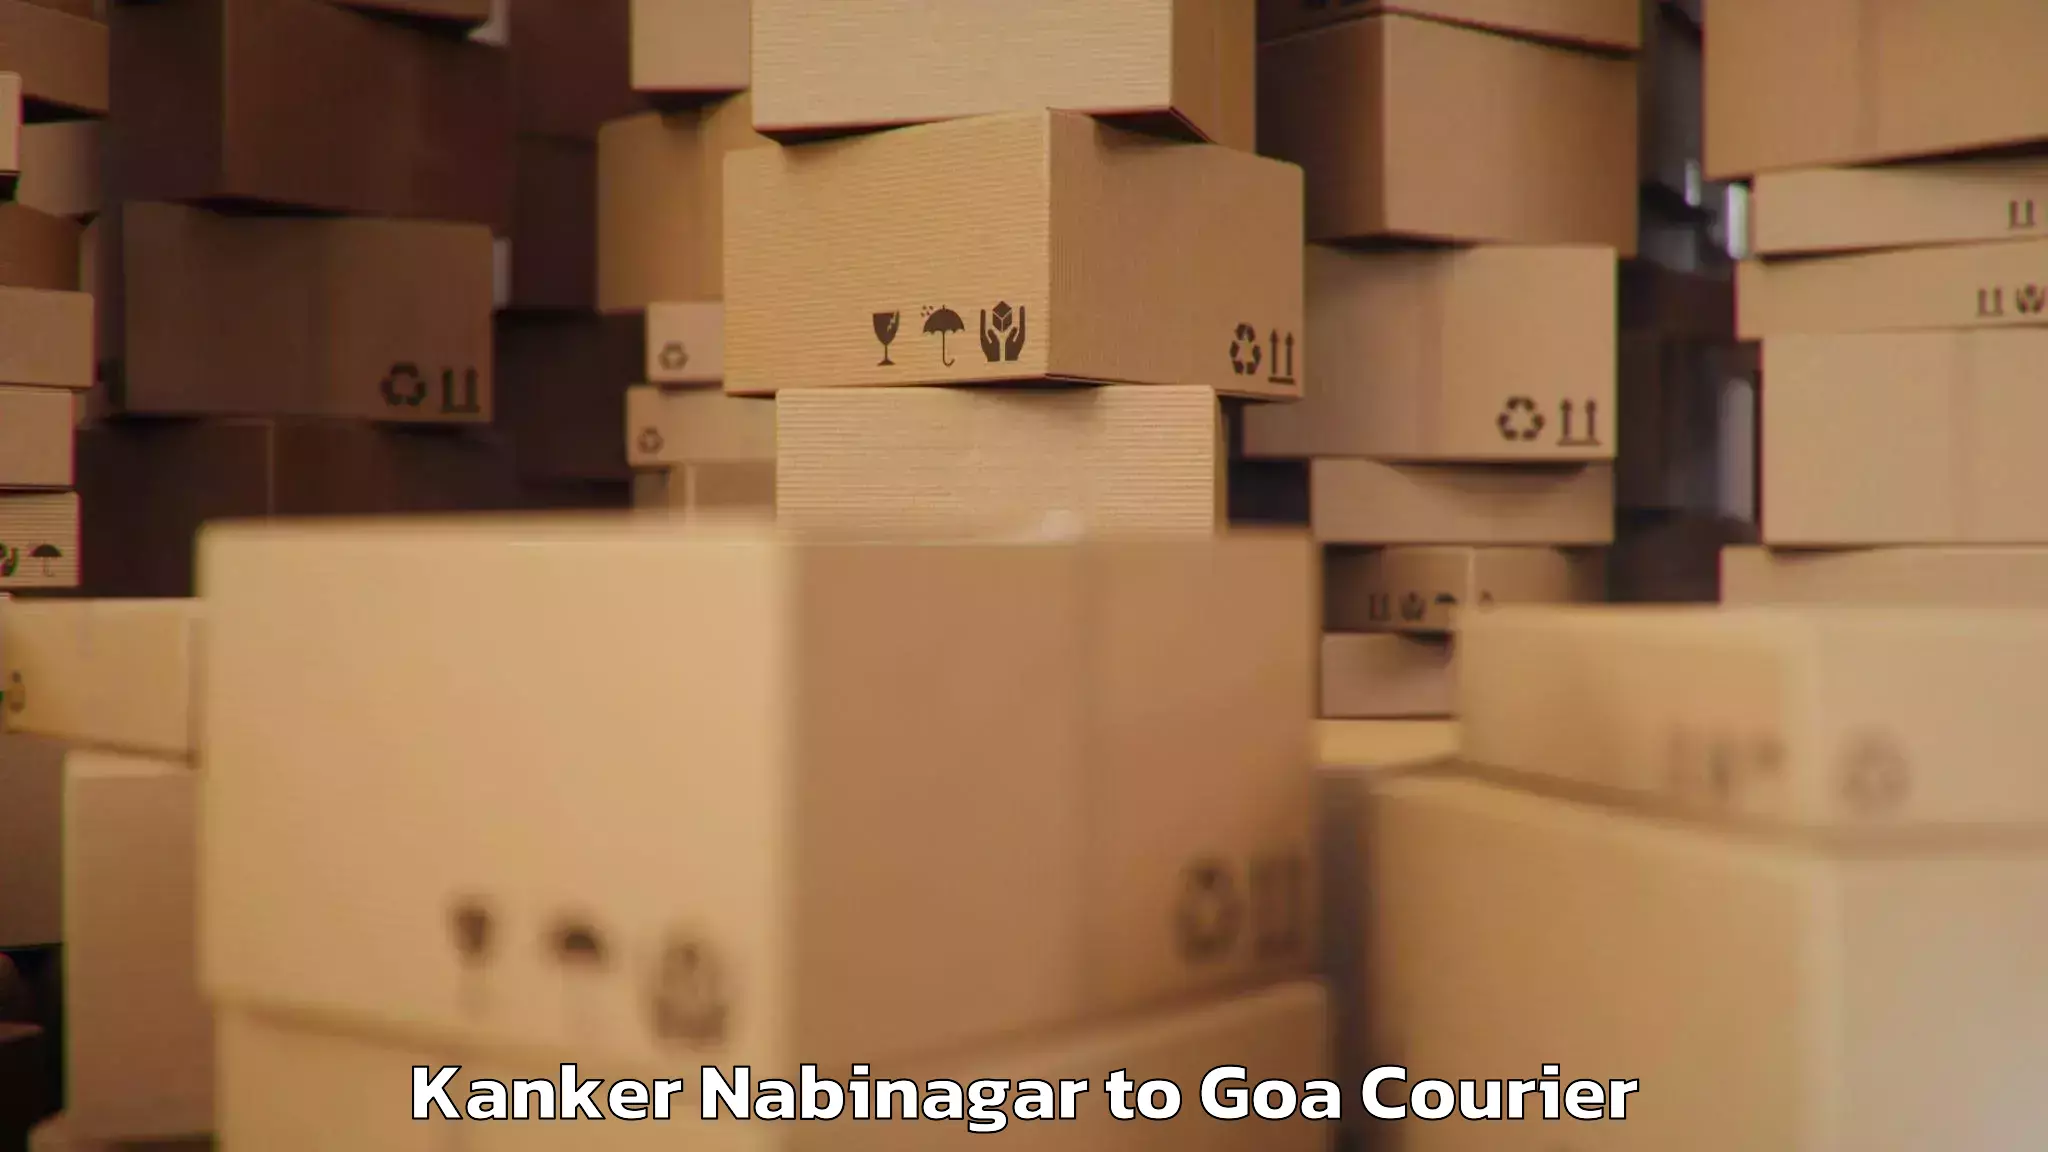 Luggage transport deals Kanker Nabinagar to Panaji